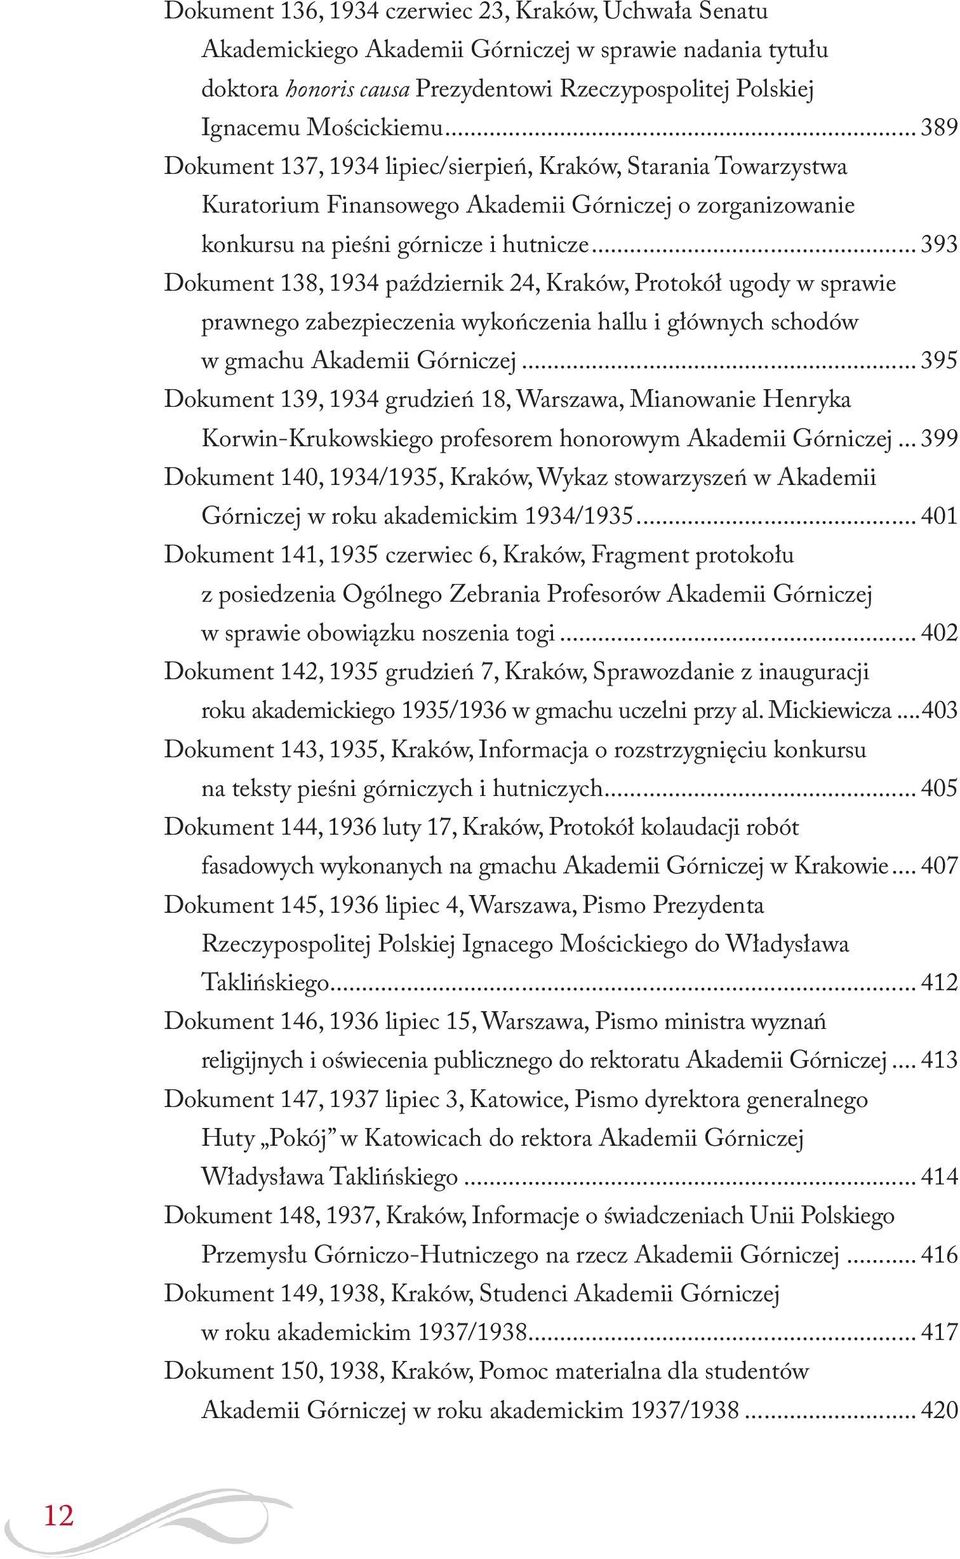 .. 393 Dokument 138, 1934 październik 24, Kraków, Protokół ugody w sprawie prawnego zabezpieczenia wykończenia hallu i głównych schodów w gmachu Akademii Górniczej.